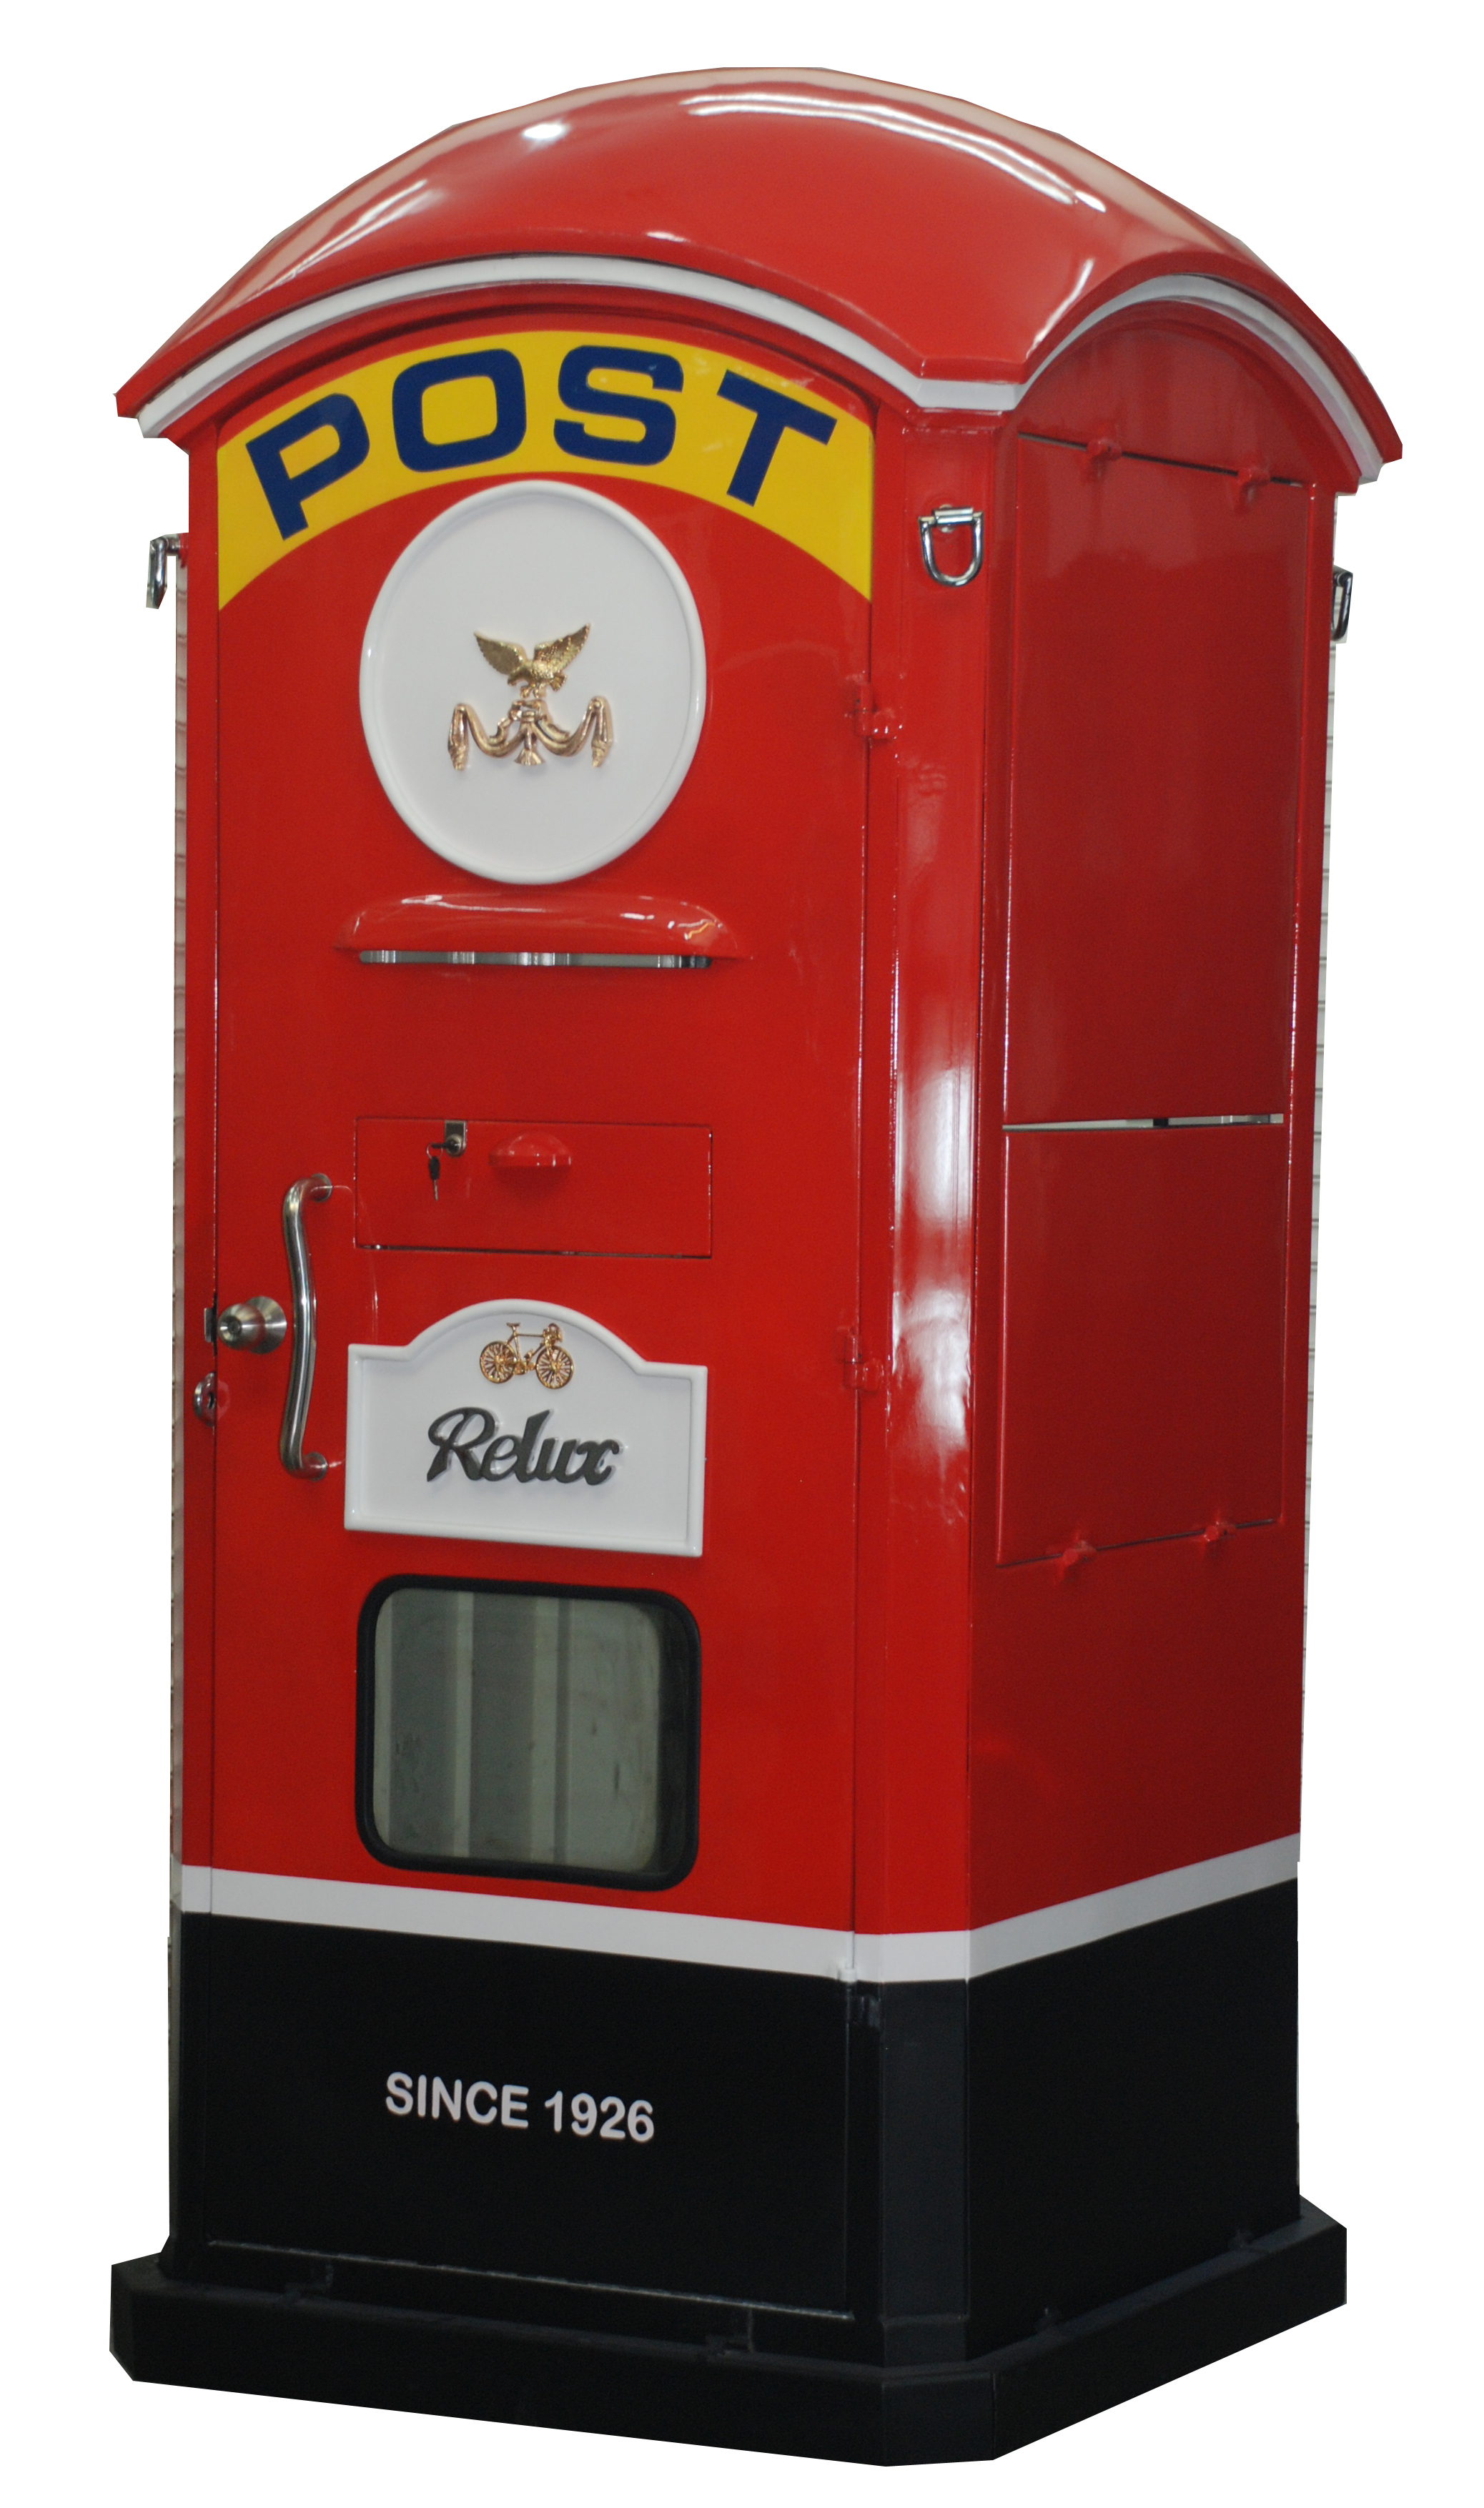 RELUX บูธขายสินค้า ตู้โชว์ ตู้ยาม พร็อพ ดีไซน์ตู้ไปรษณีย์โบราณ เหล็กหนาอย่างดี รุ่นตู้ไปรษณีย์ Post Booth